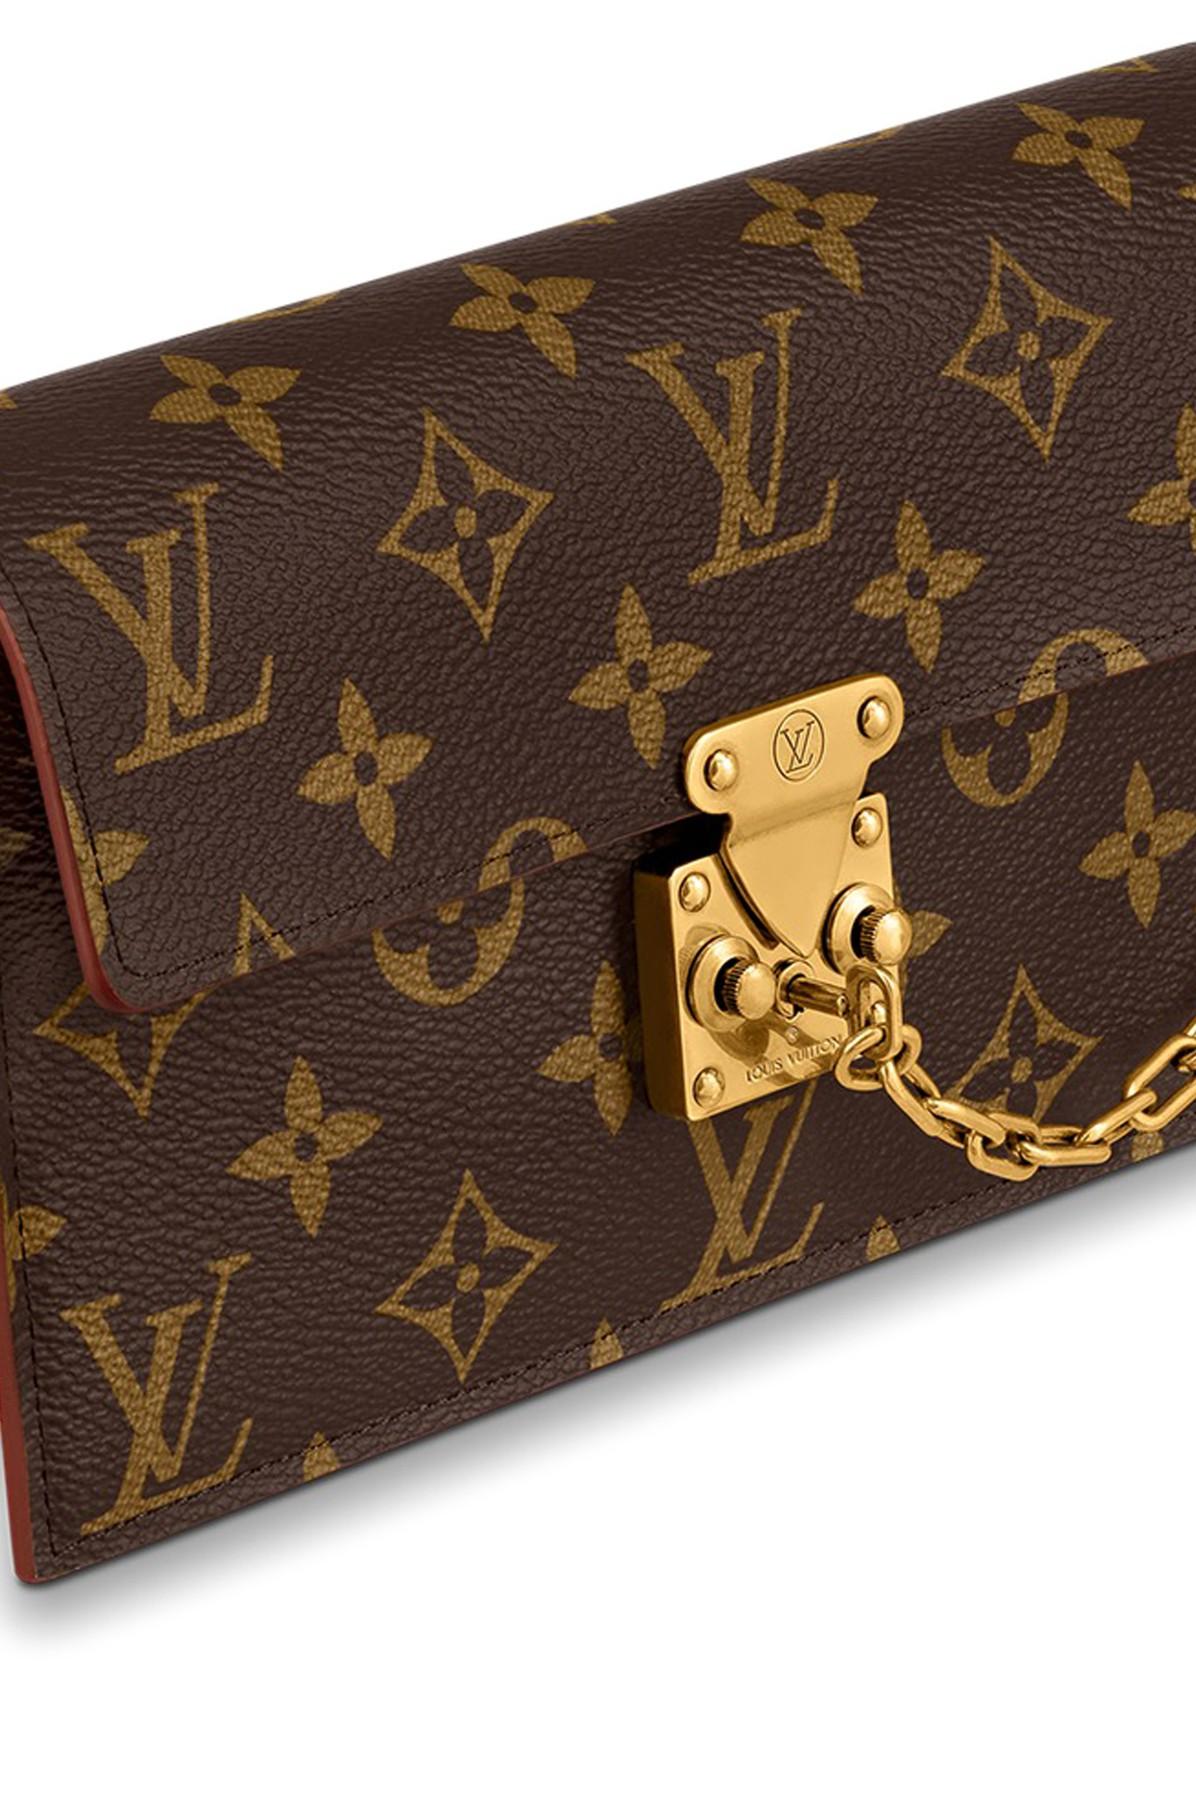 Louis Vuitton S Lock Belt Pouch Pm